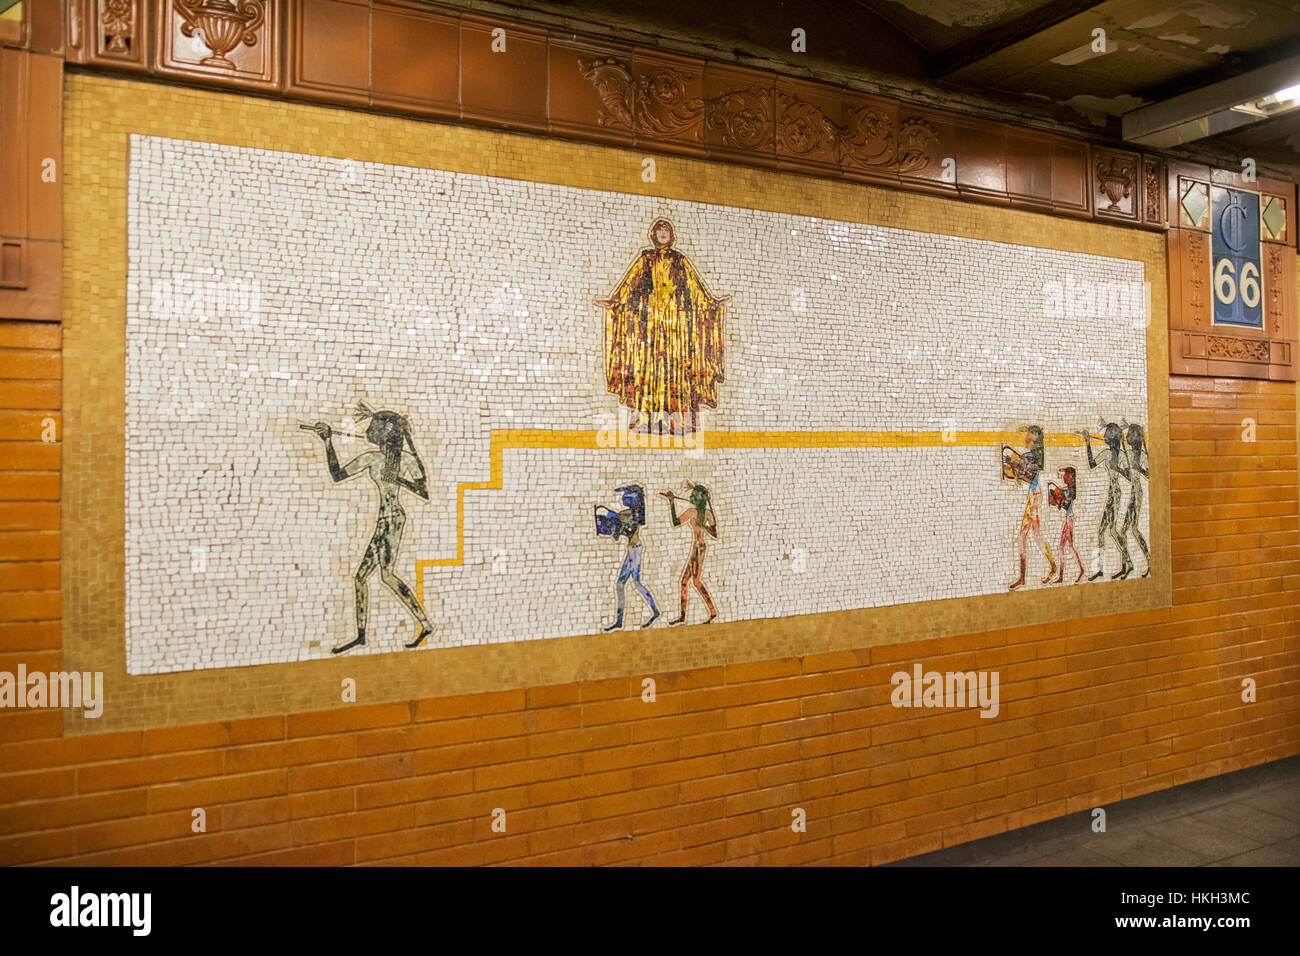 L'art de la mosaïque l'installation de West 66th Street station Lincoln Center sur la ligne 1 dans l'Upper West Side de Manhattan, New York. Banque D'Images